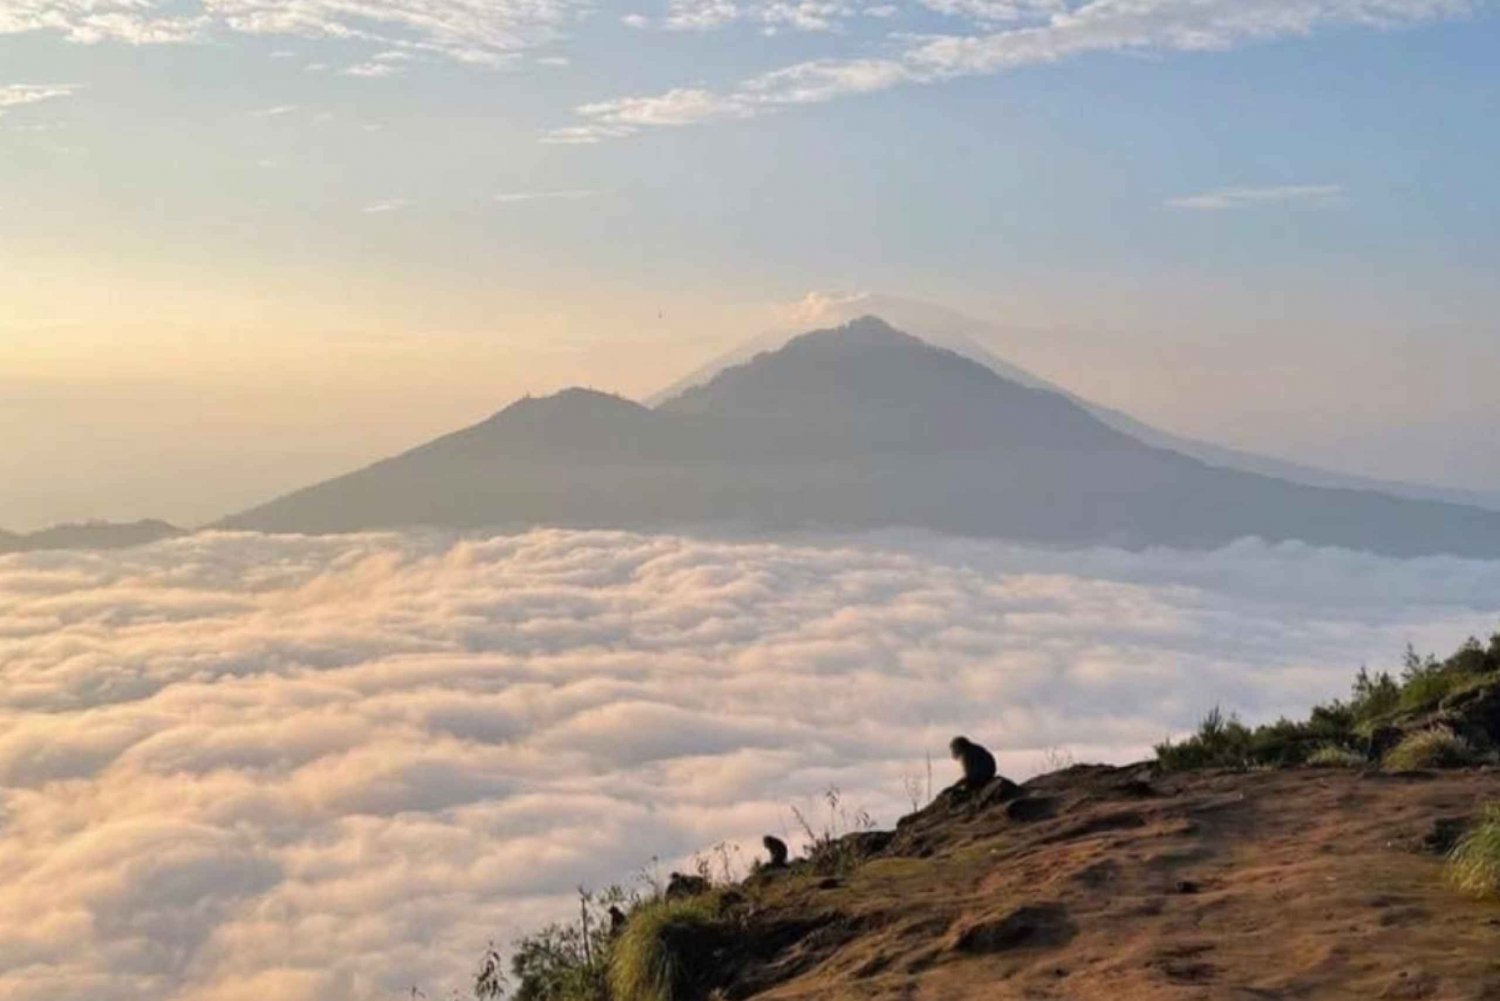 Koppla av genom att bestiga Mount Batur